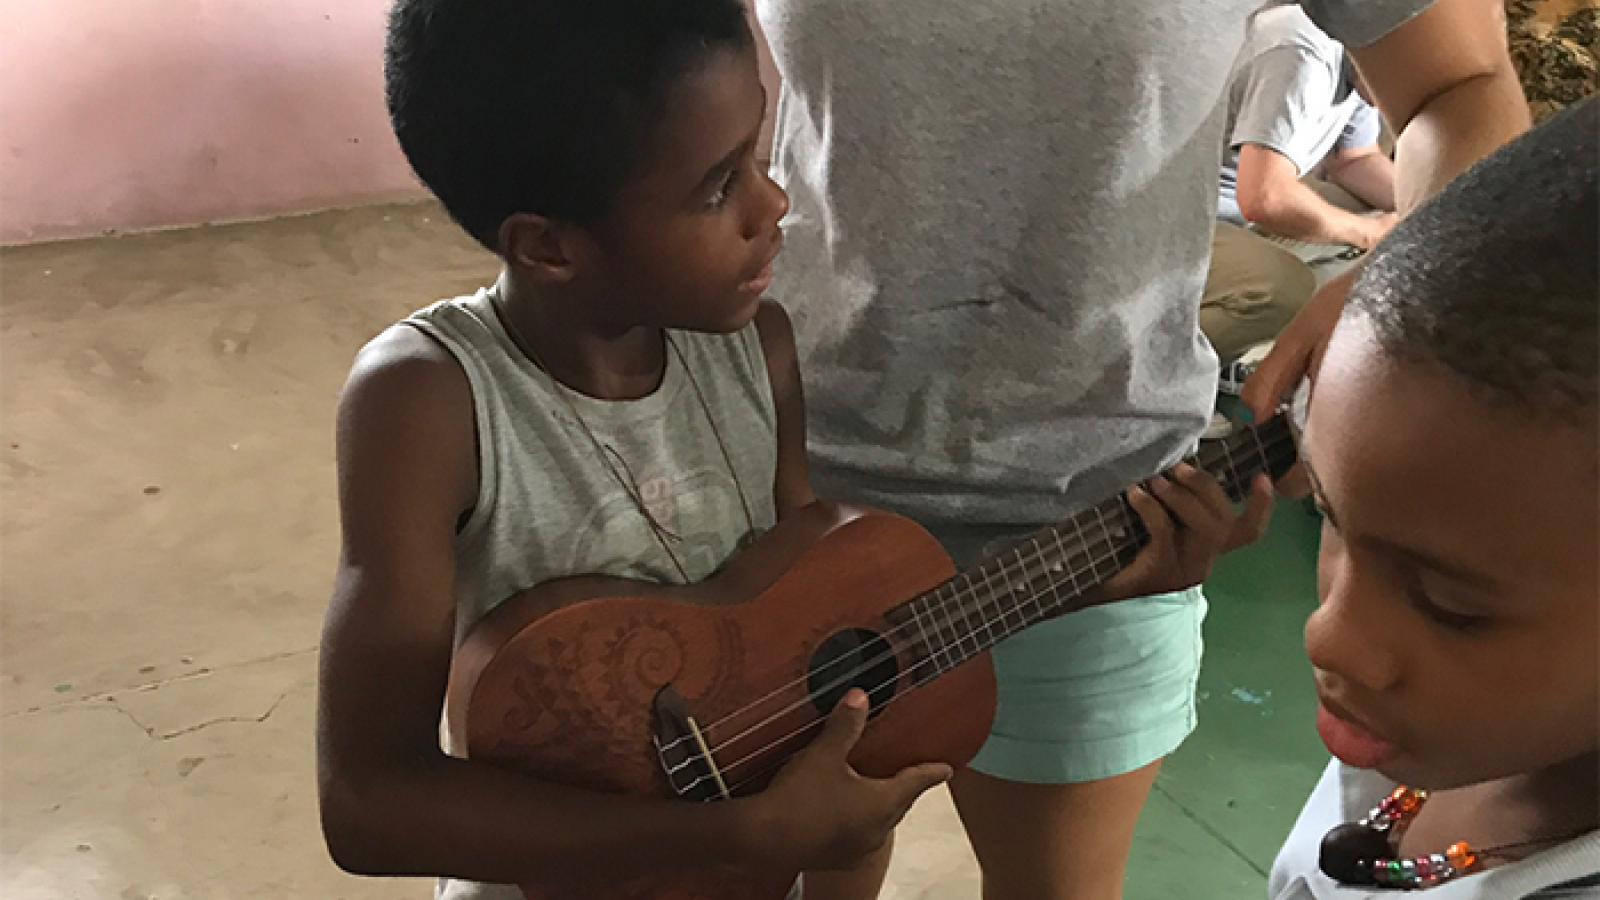 Child playing ukulele